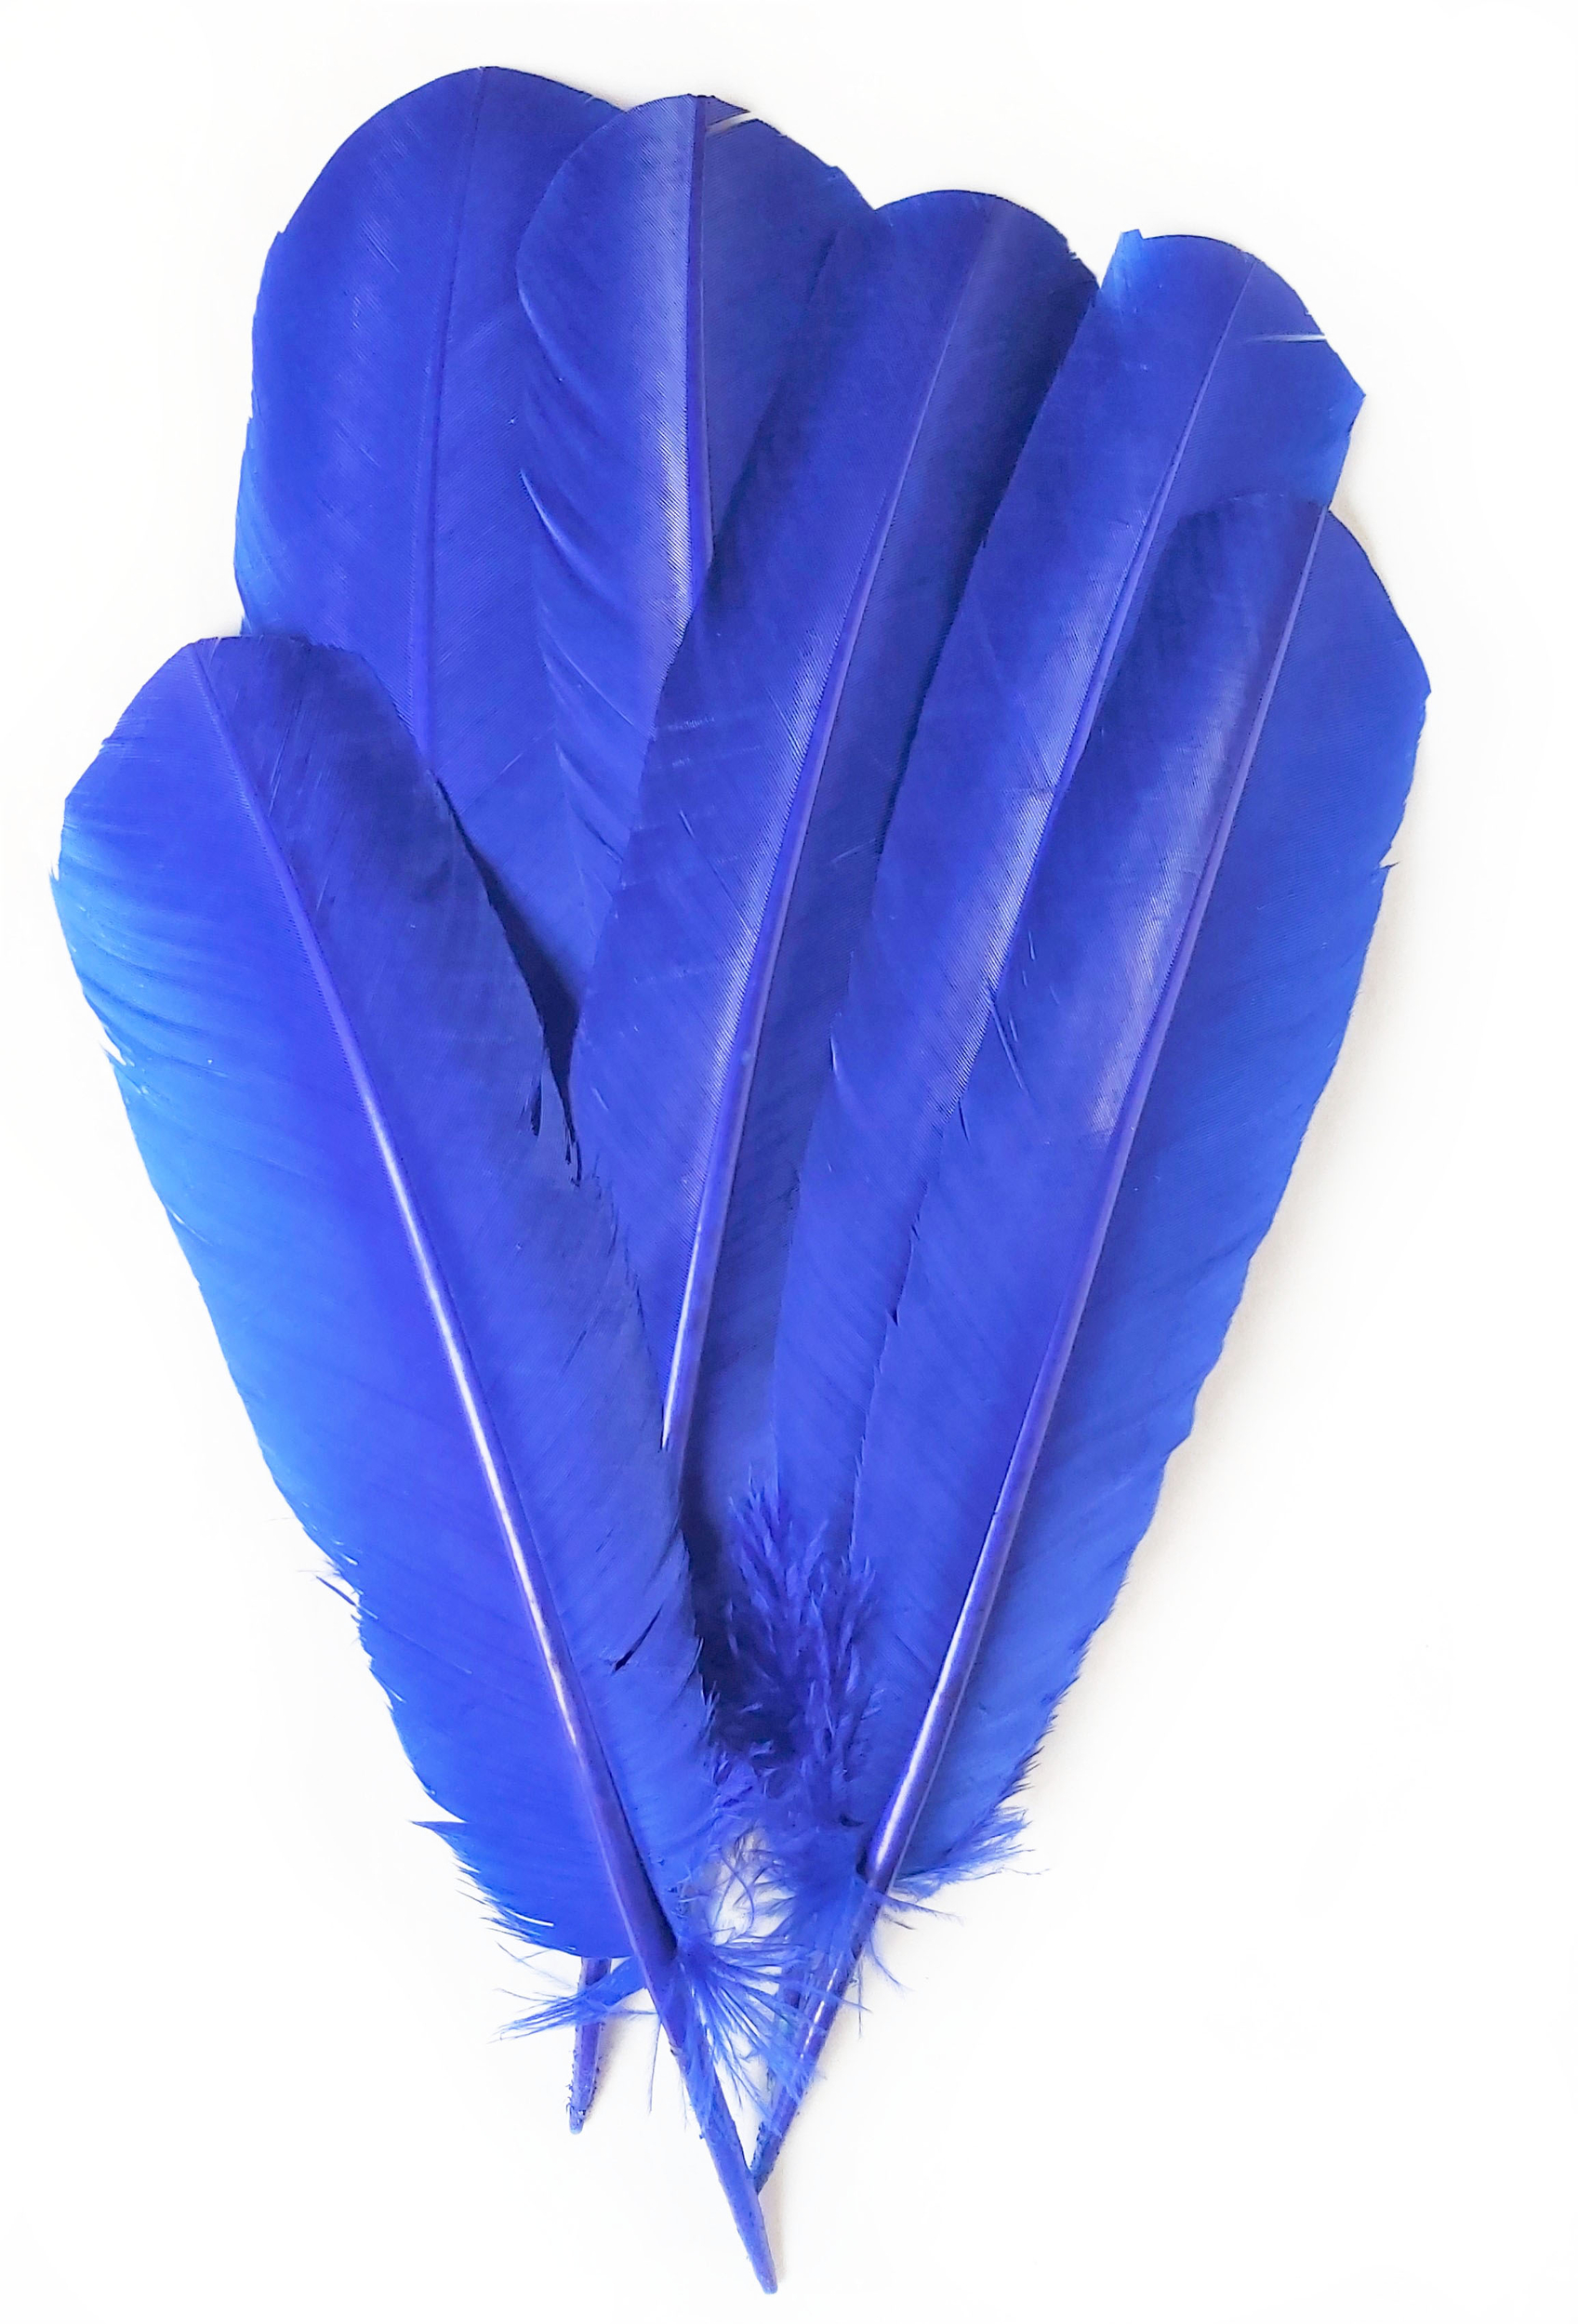 plume palette de dinde - 5 pcs - teintes bleu